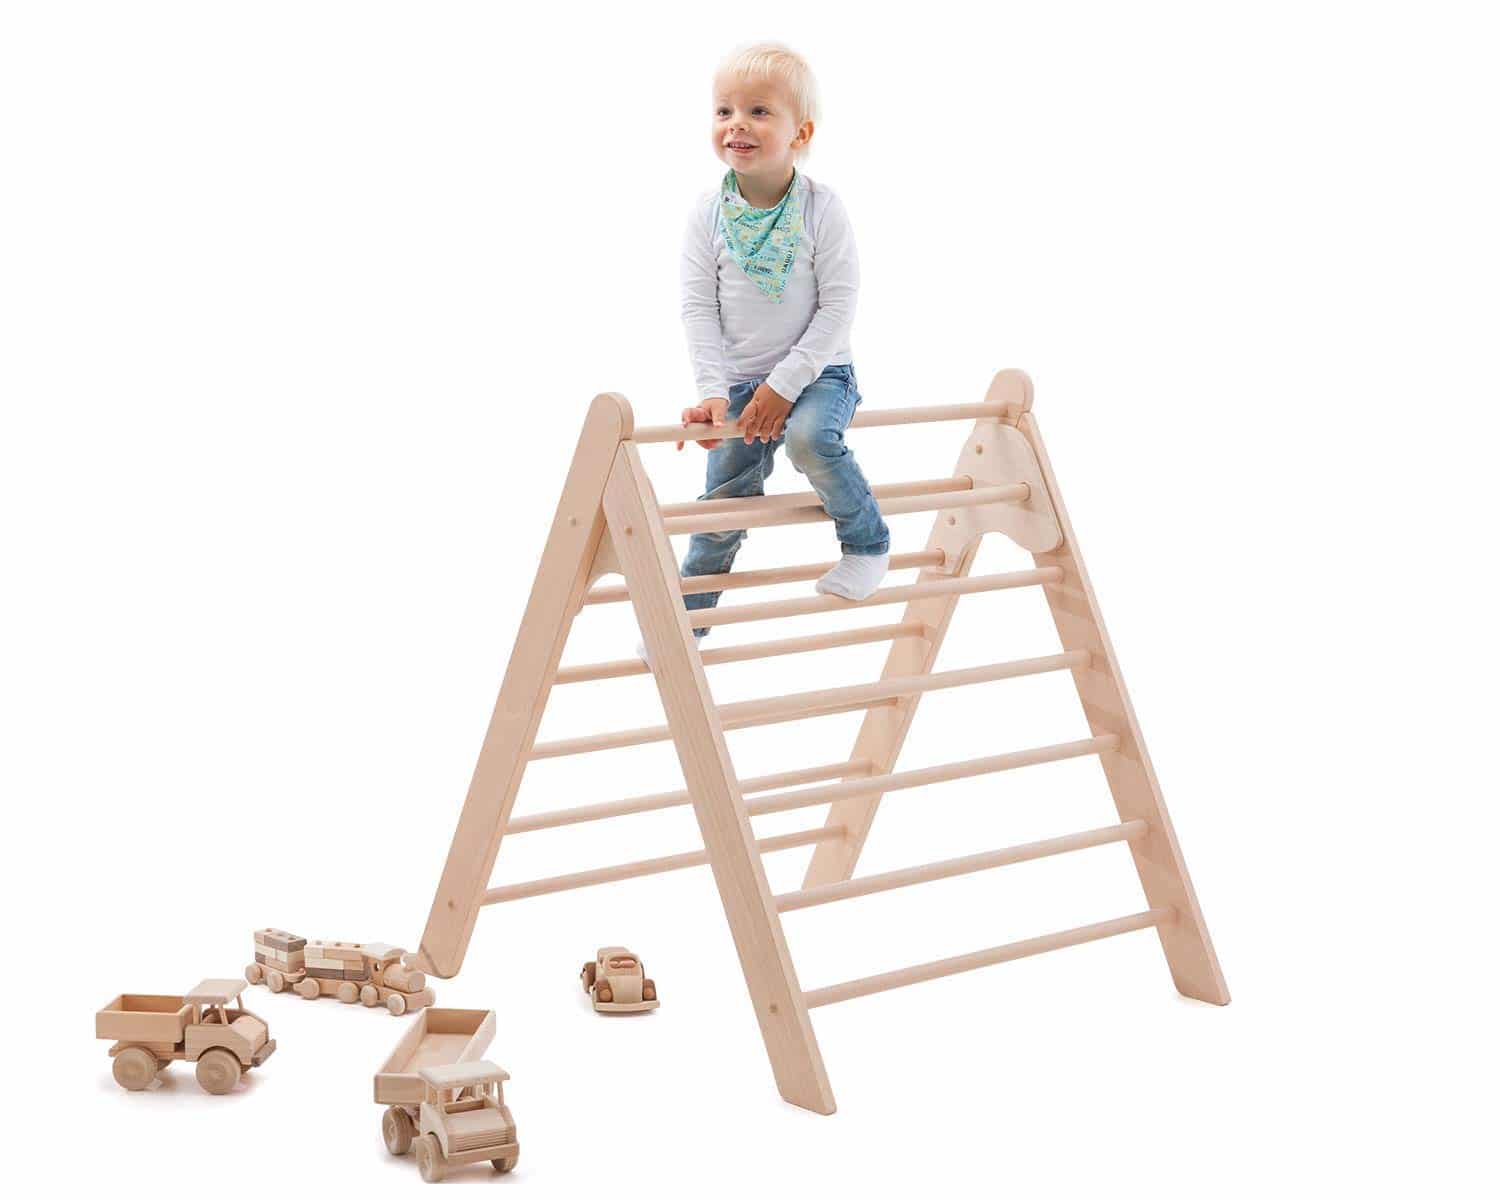 Pikler Dreieck - Ideales Spielgerät zum Klettern für Kinder